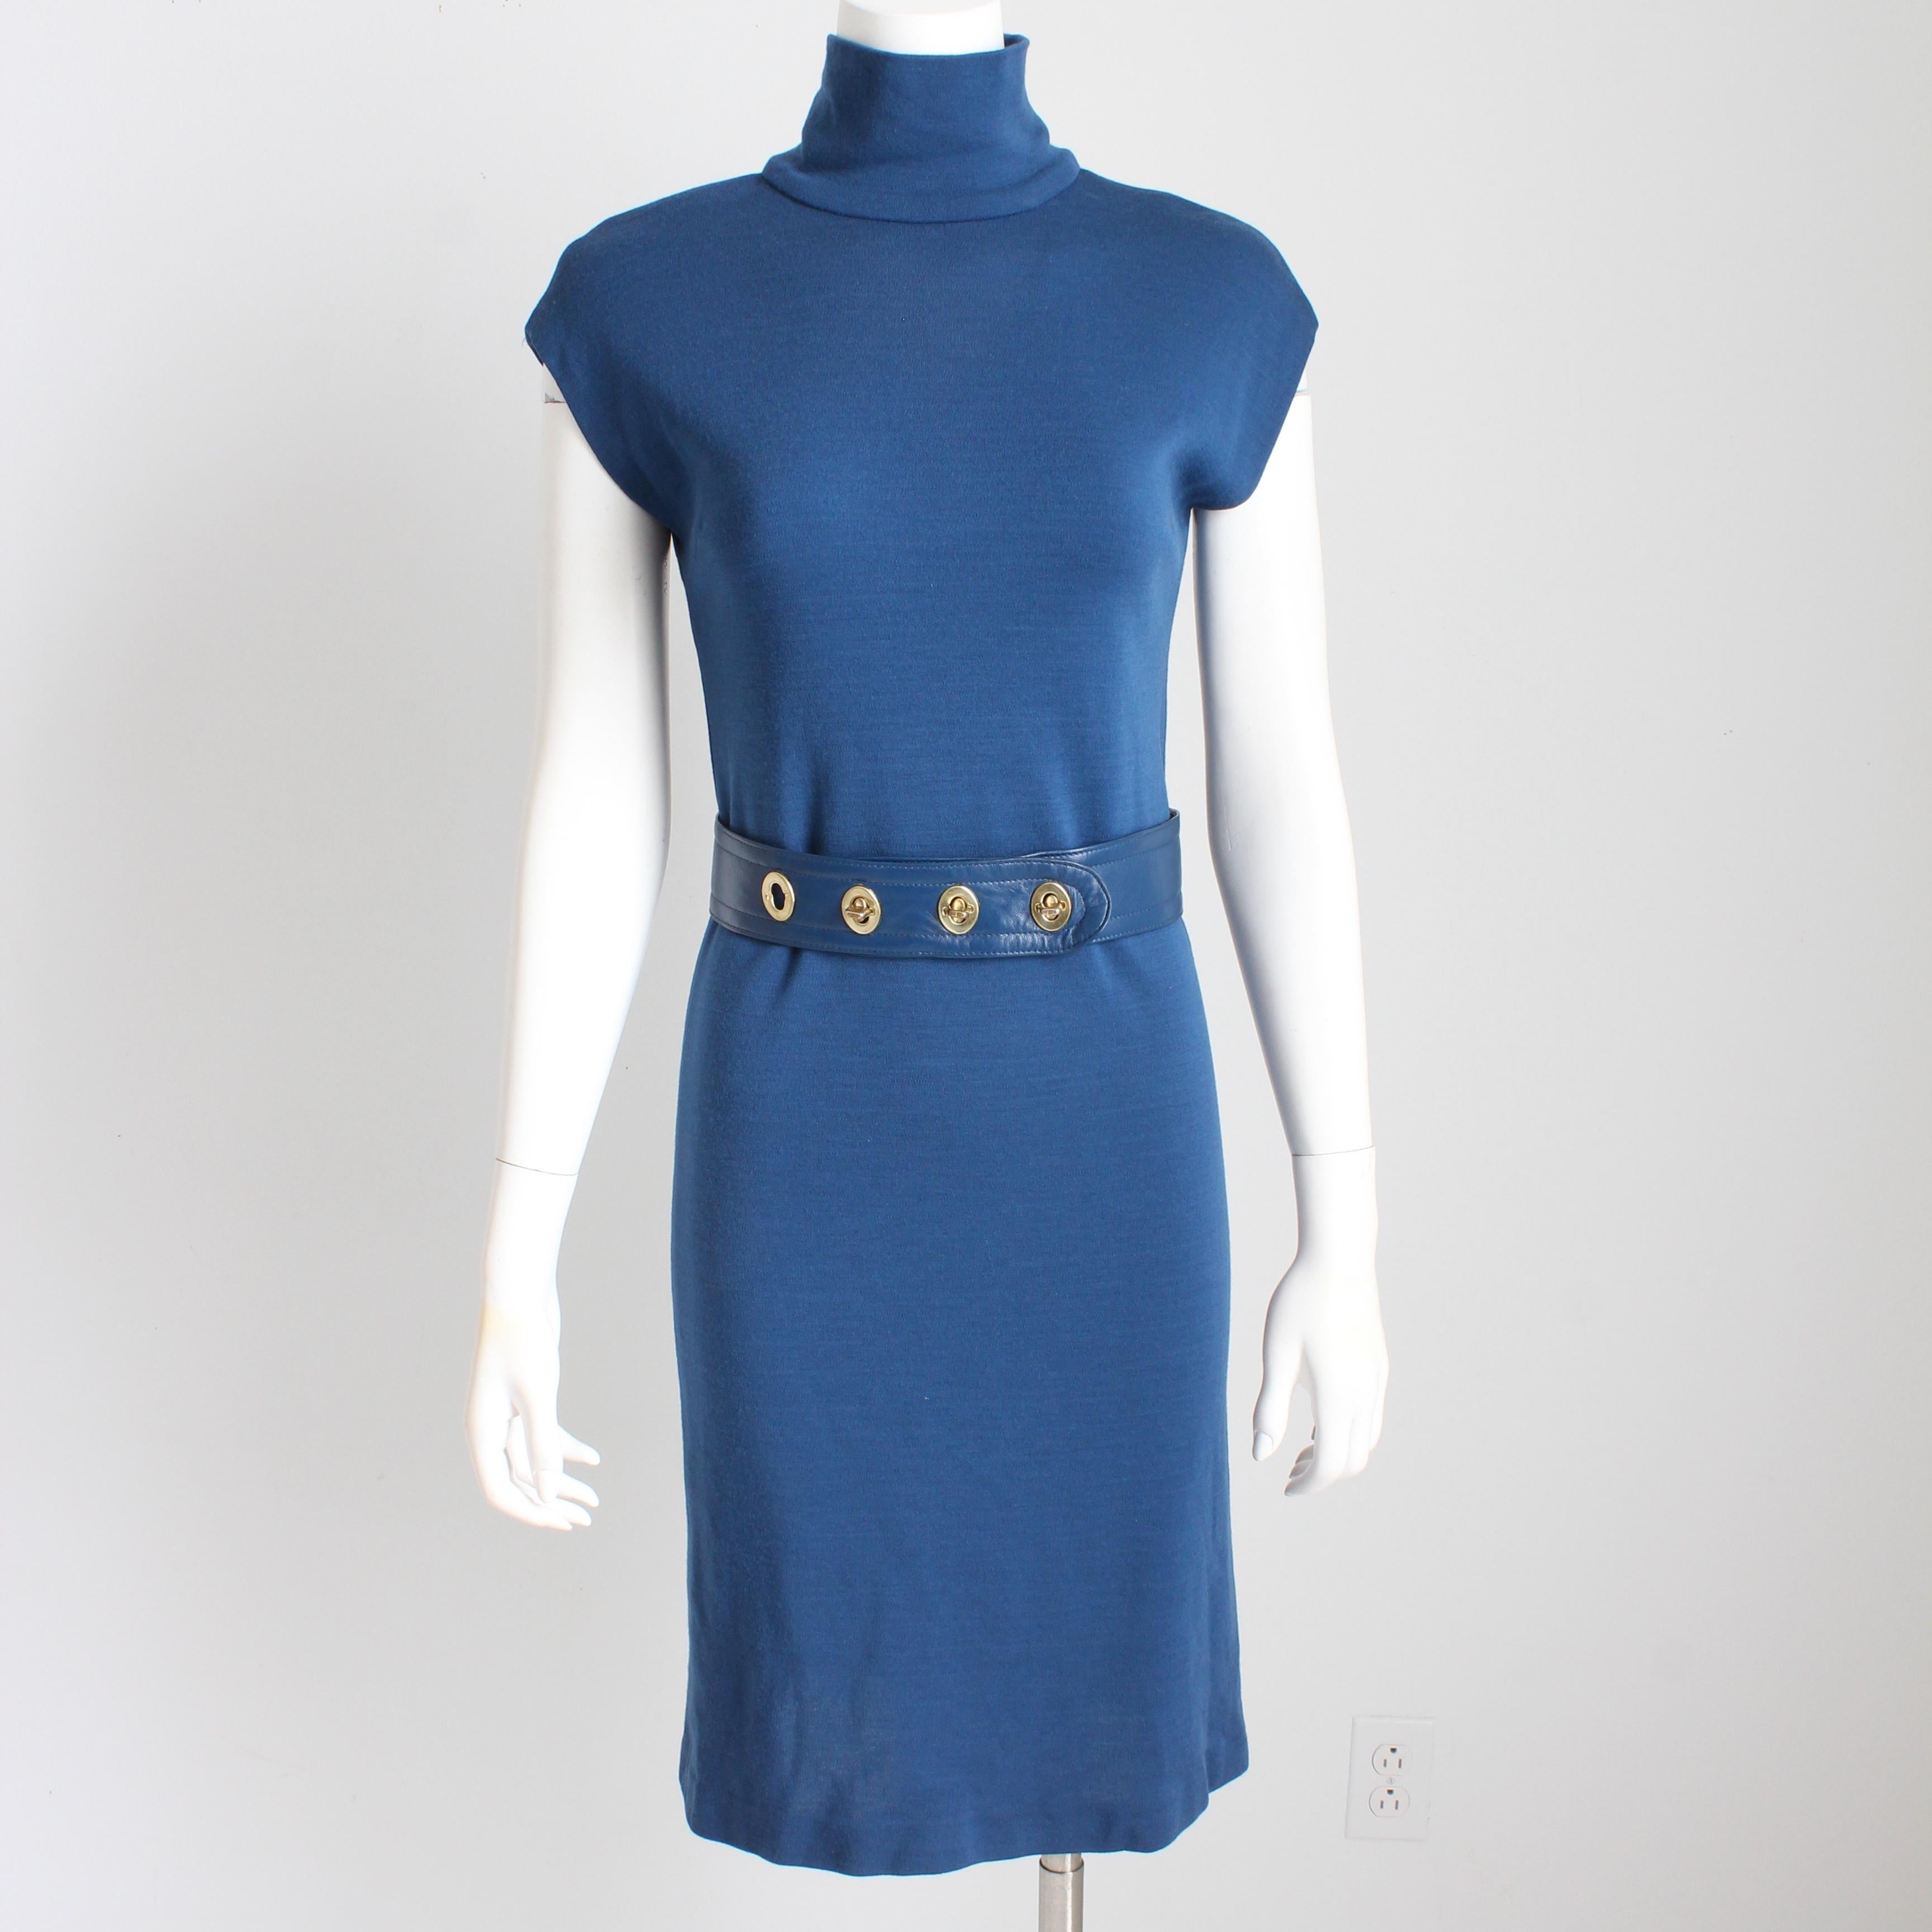 Authentique robe à col roulé en tricot bleu de Bonnie Cashin for Sills, d'occasion, avec ceinture en cuir bleu assortie, circa les années 60. Ultra mod ! 

Confectionné en jersey de laine couleur myrtille, il présente un col montant, des manches